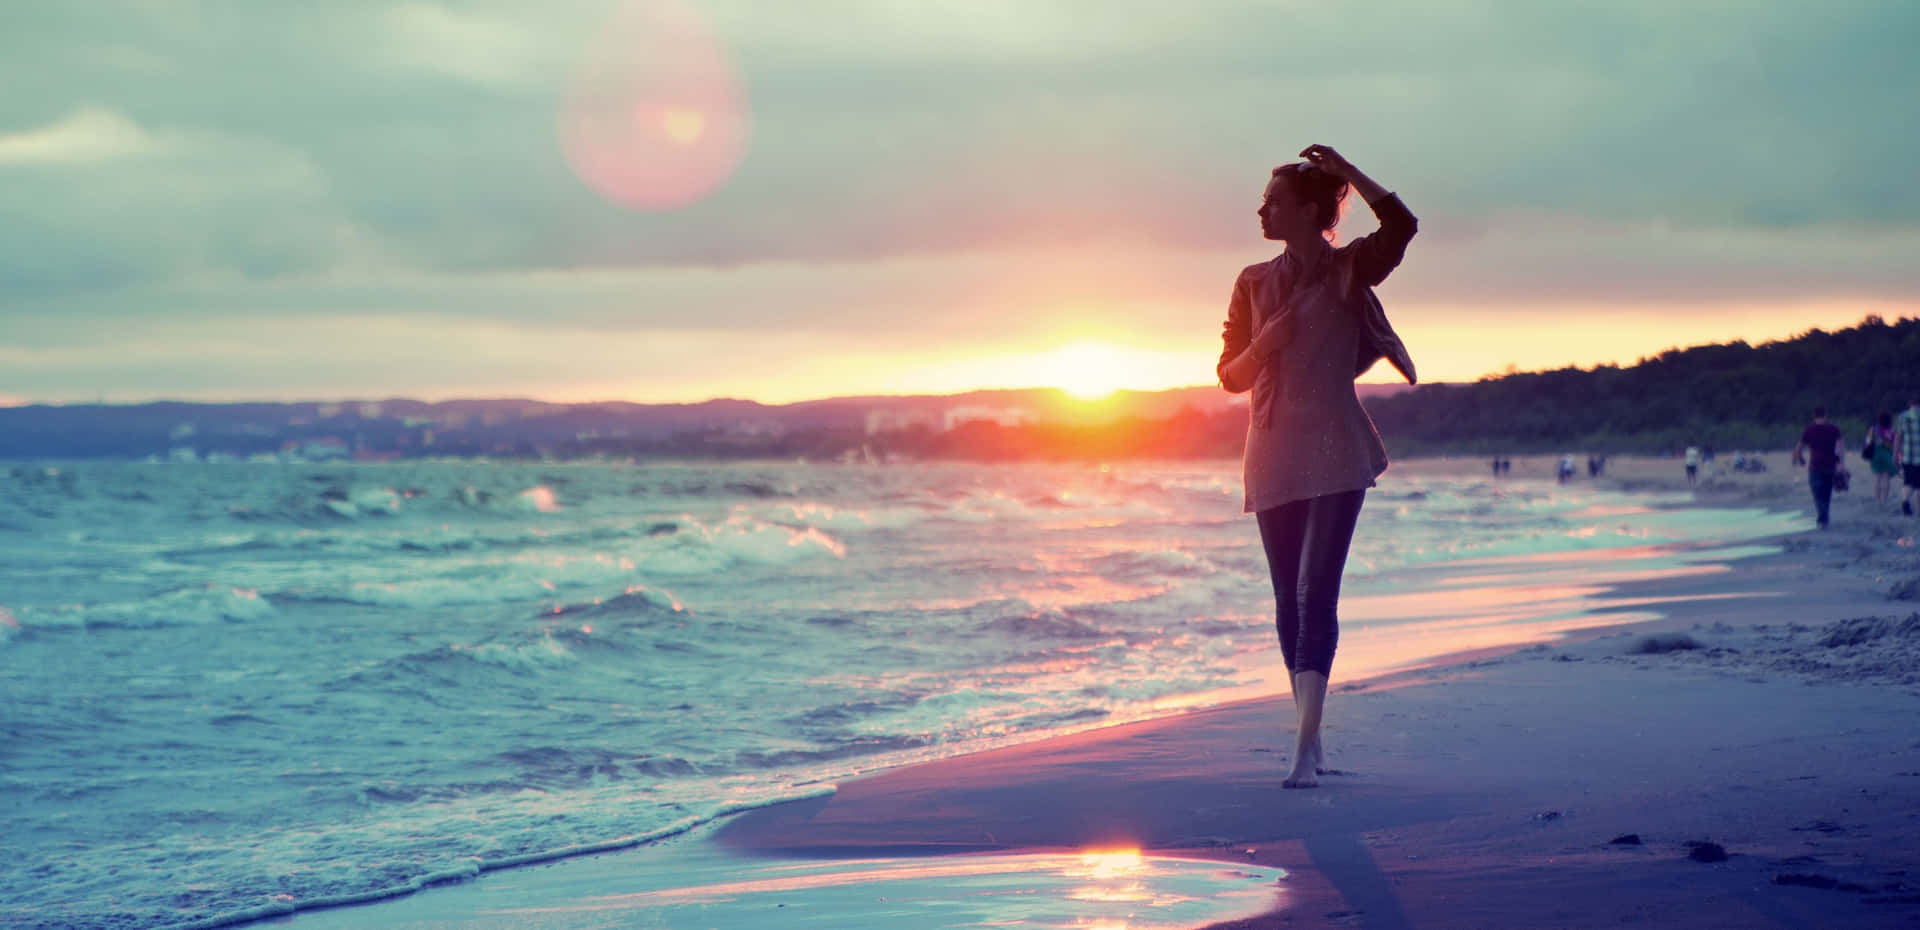 Sonnenuntergangsilhouette Eines Mädchens Am Strand Wallpaper